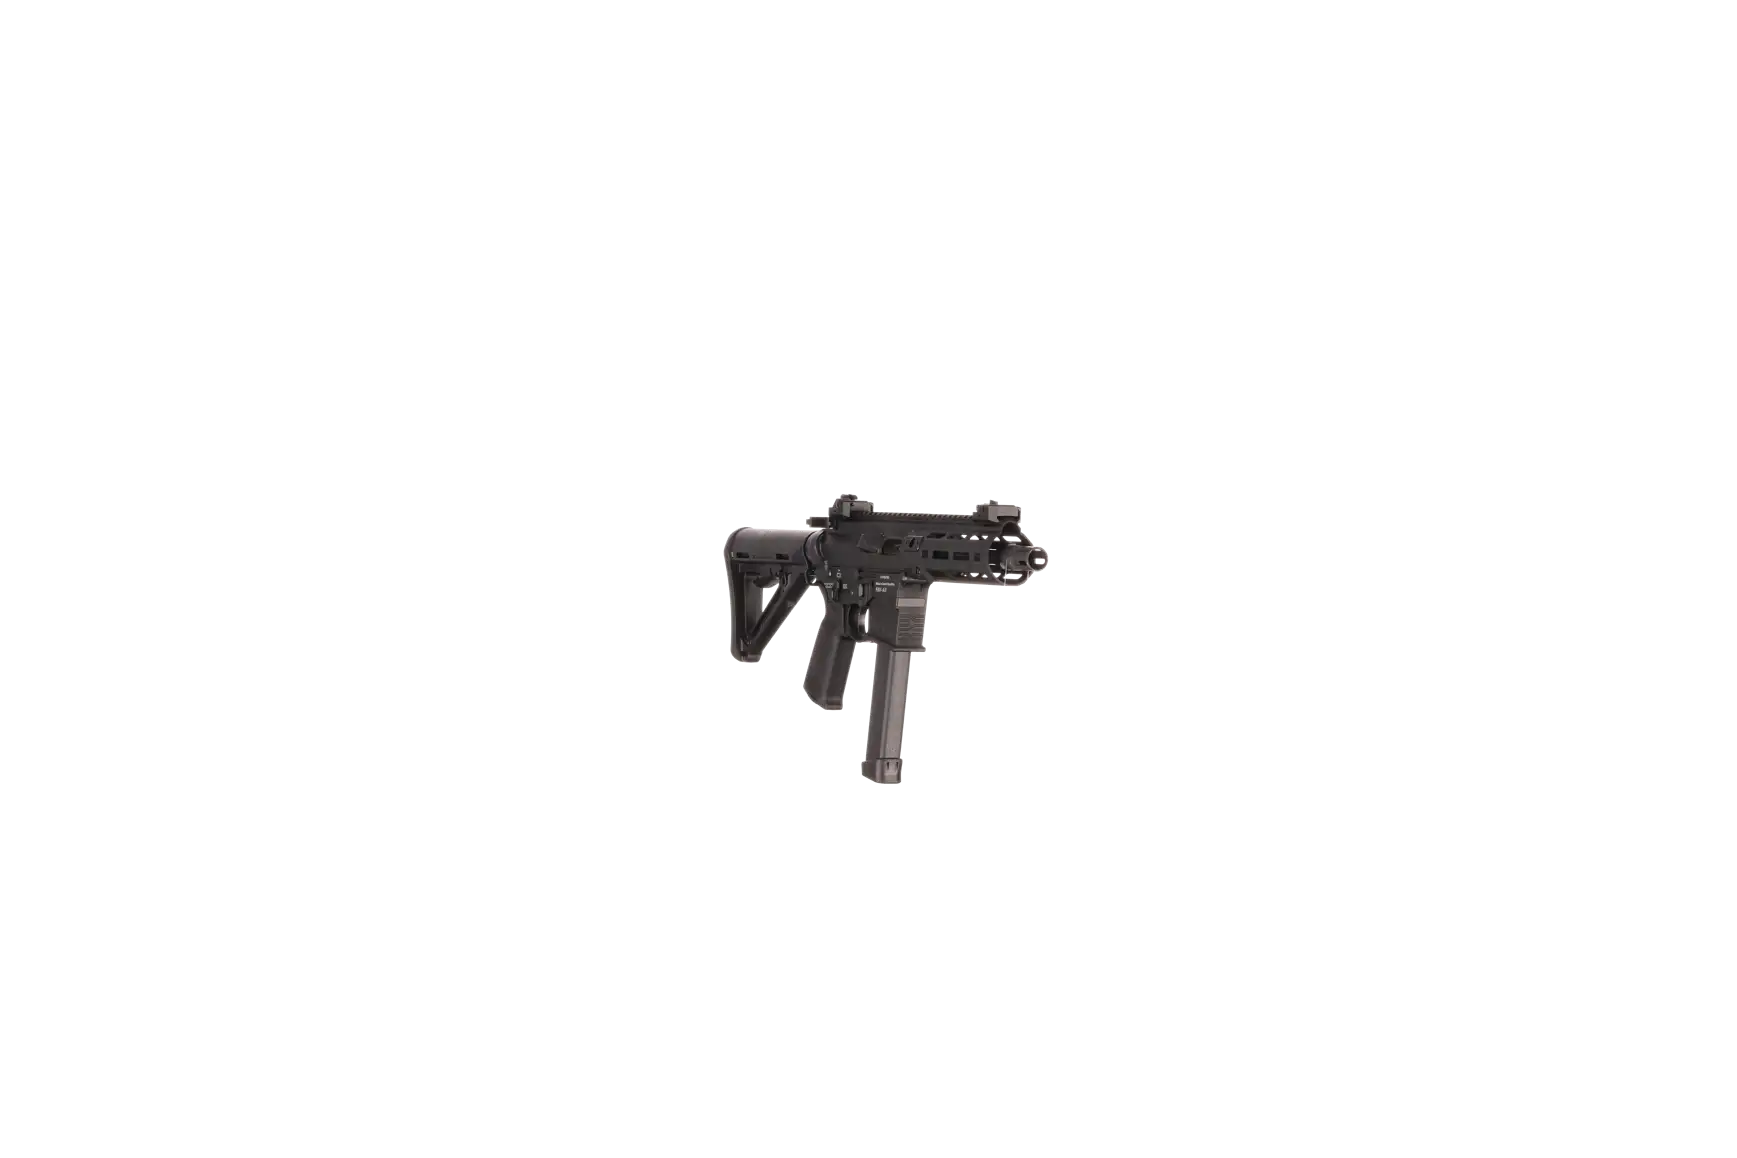 Náhledový obrázek pušky V-AR 9mm luger SPINVIEW 1 R13